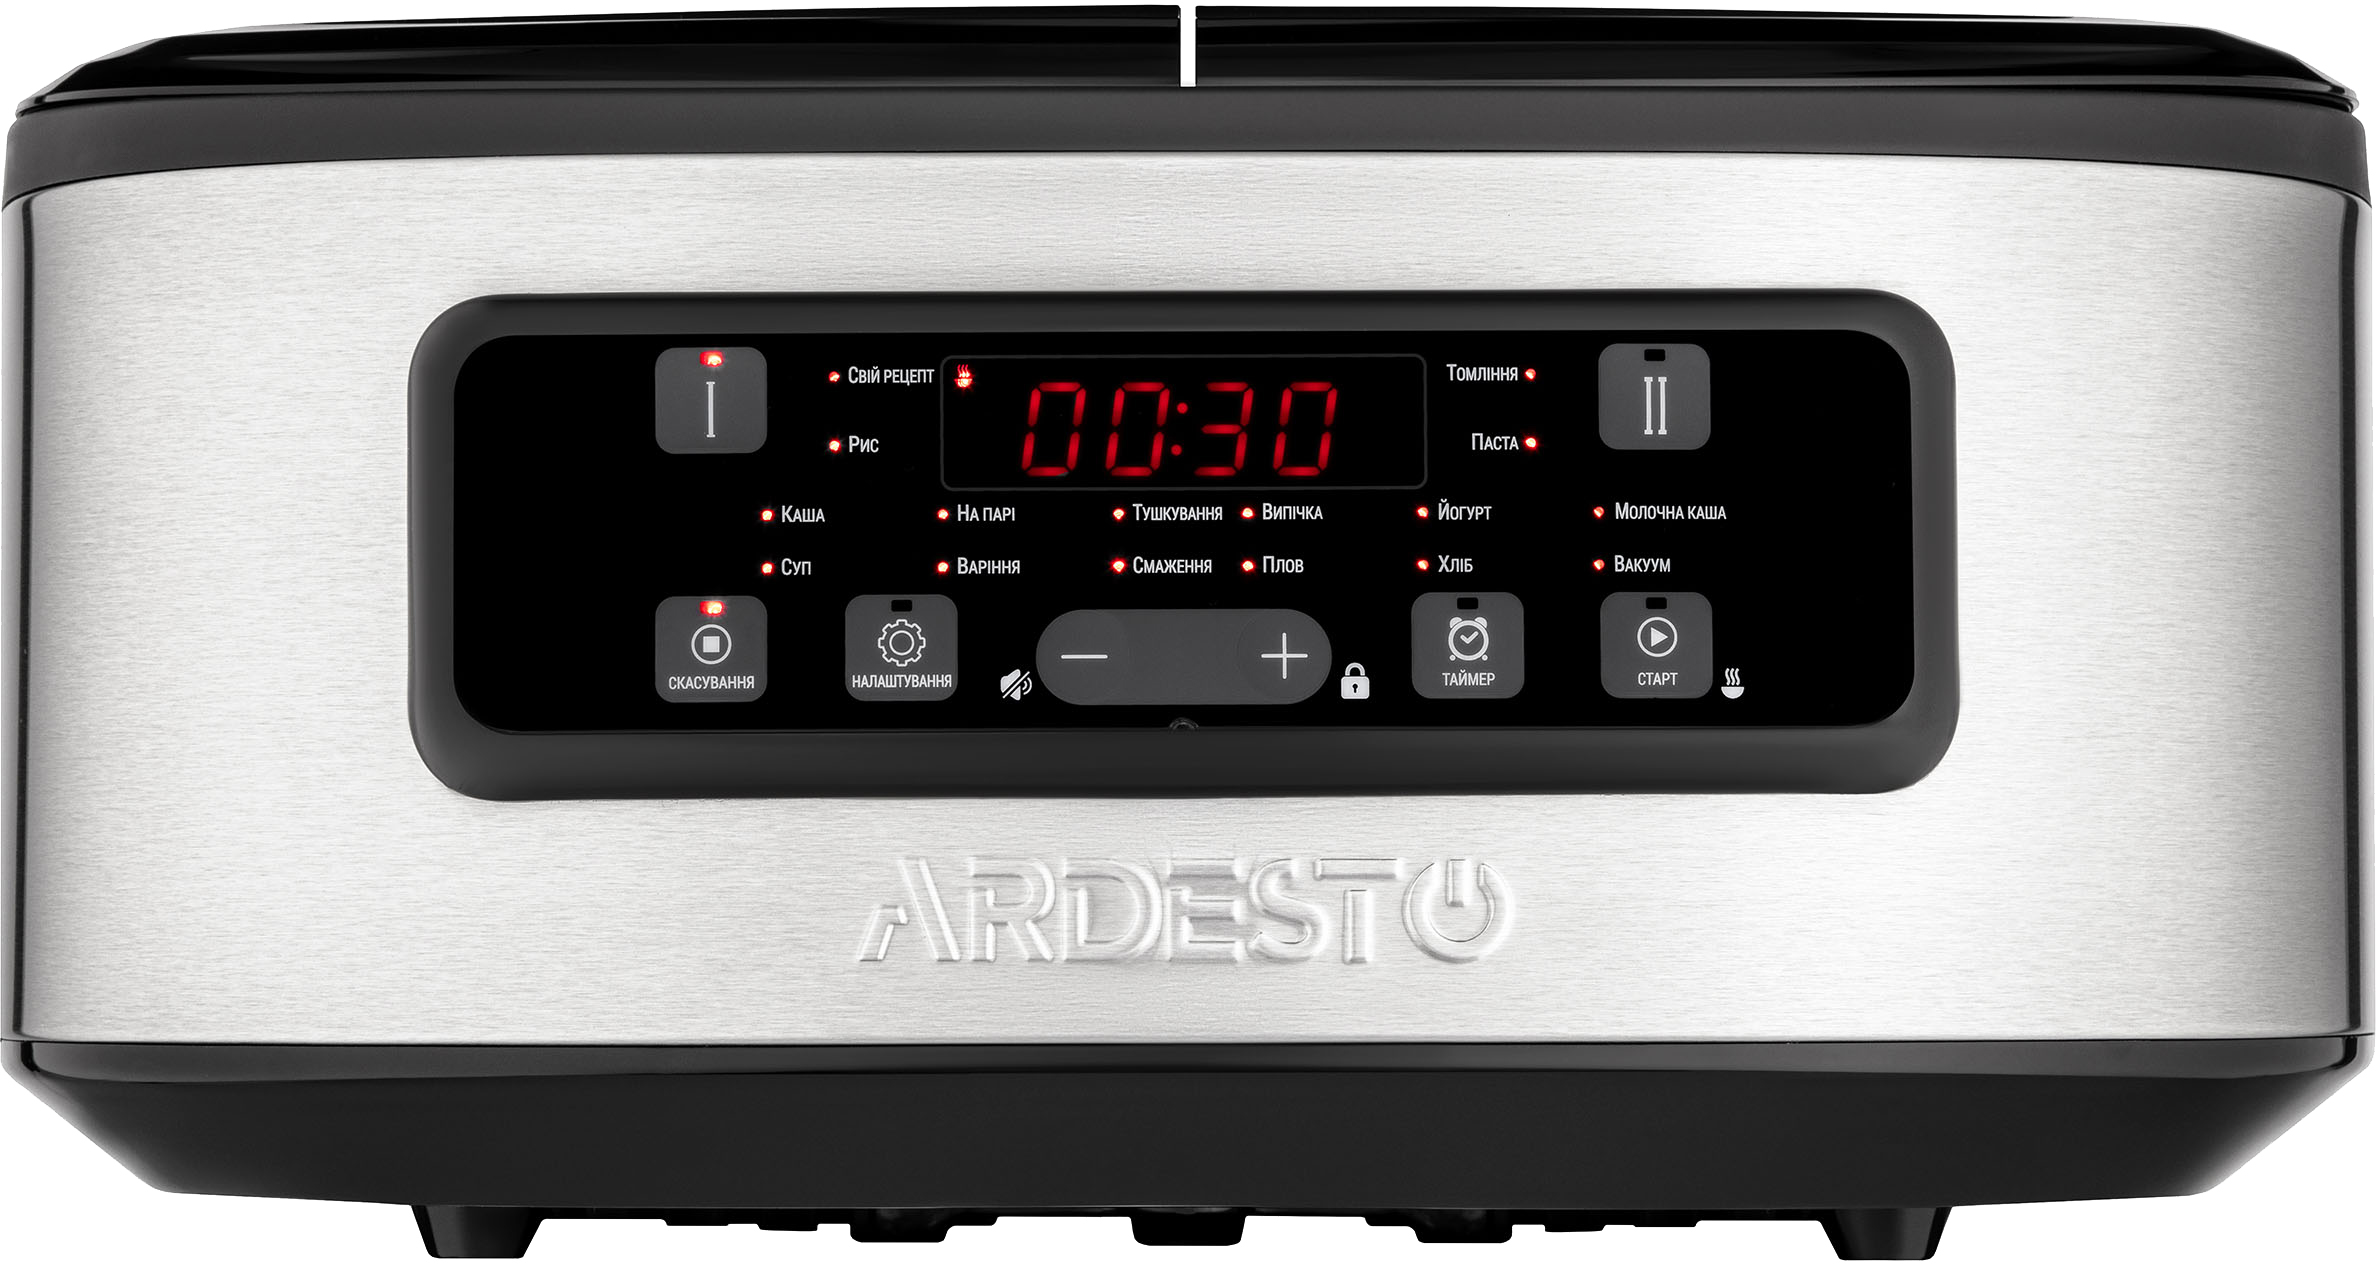 Мультиварка Ardesto DMC-SA1212SB